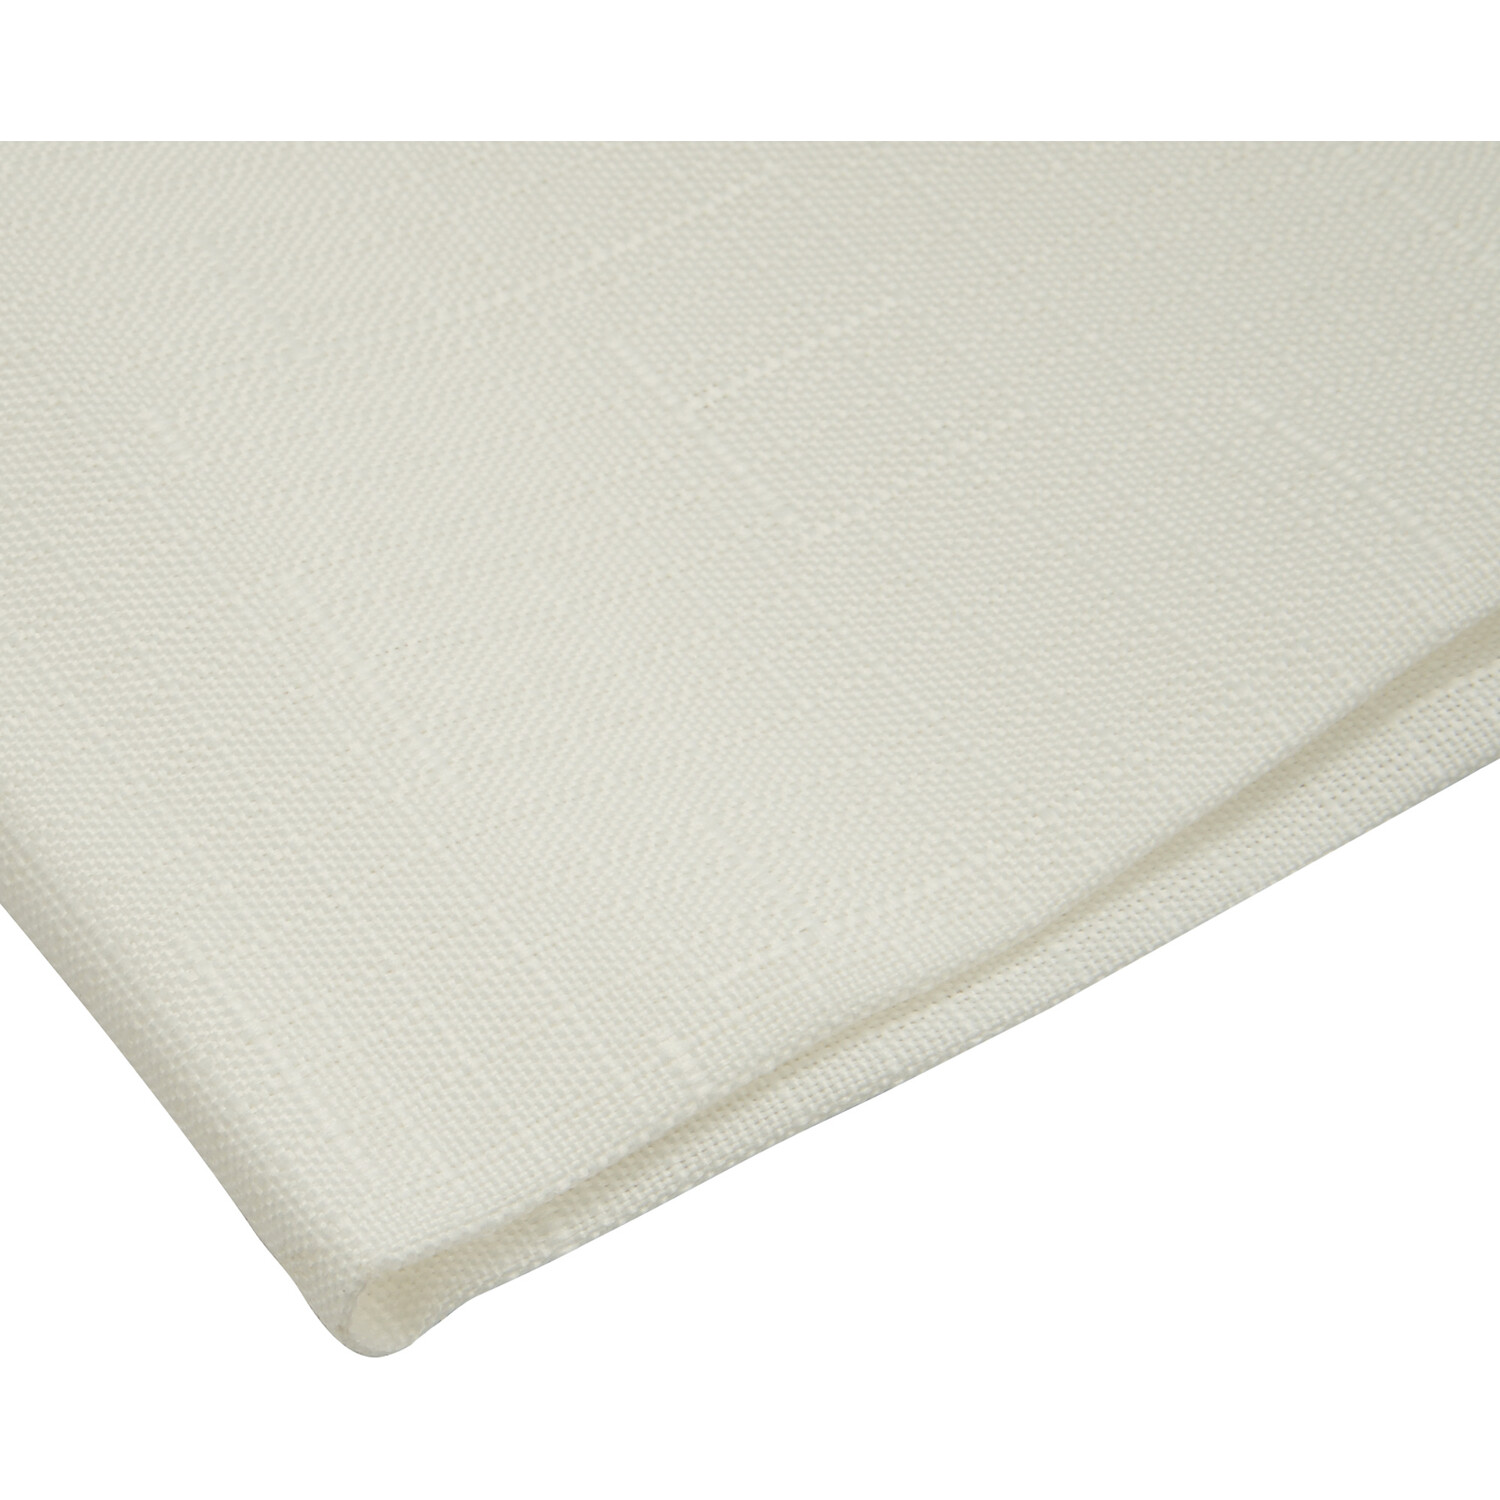 Divante White Linen Look Tablecloth 180 x 130cm Image 5